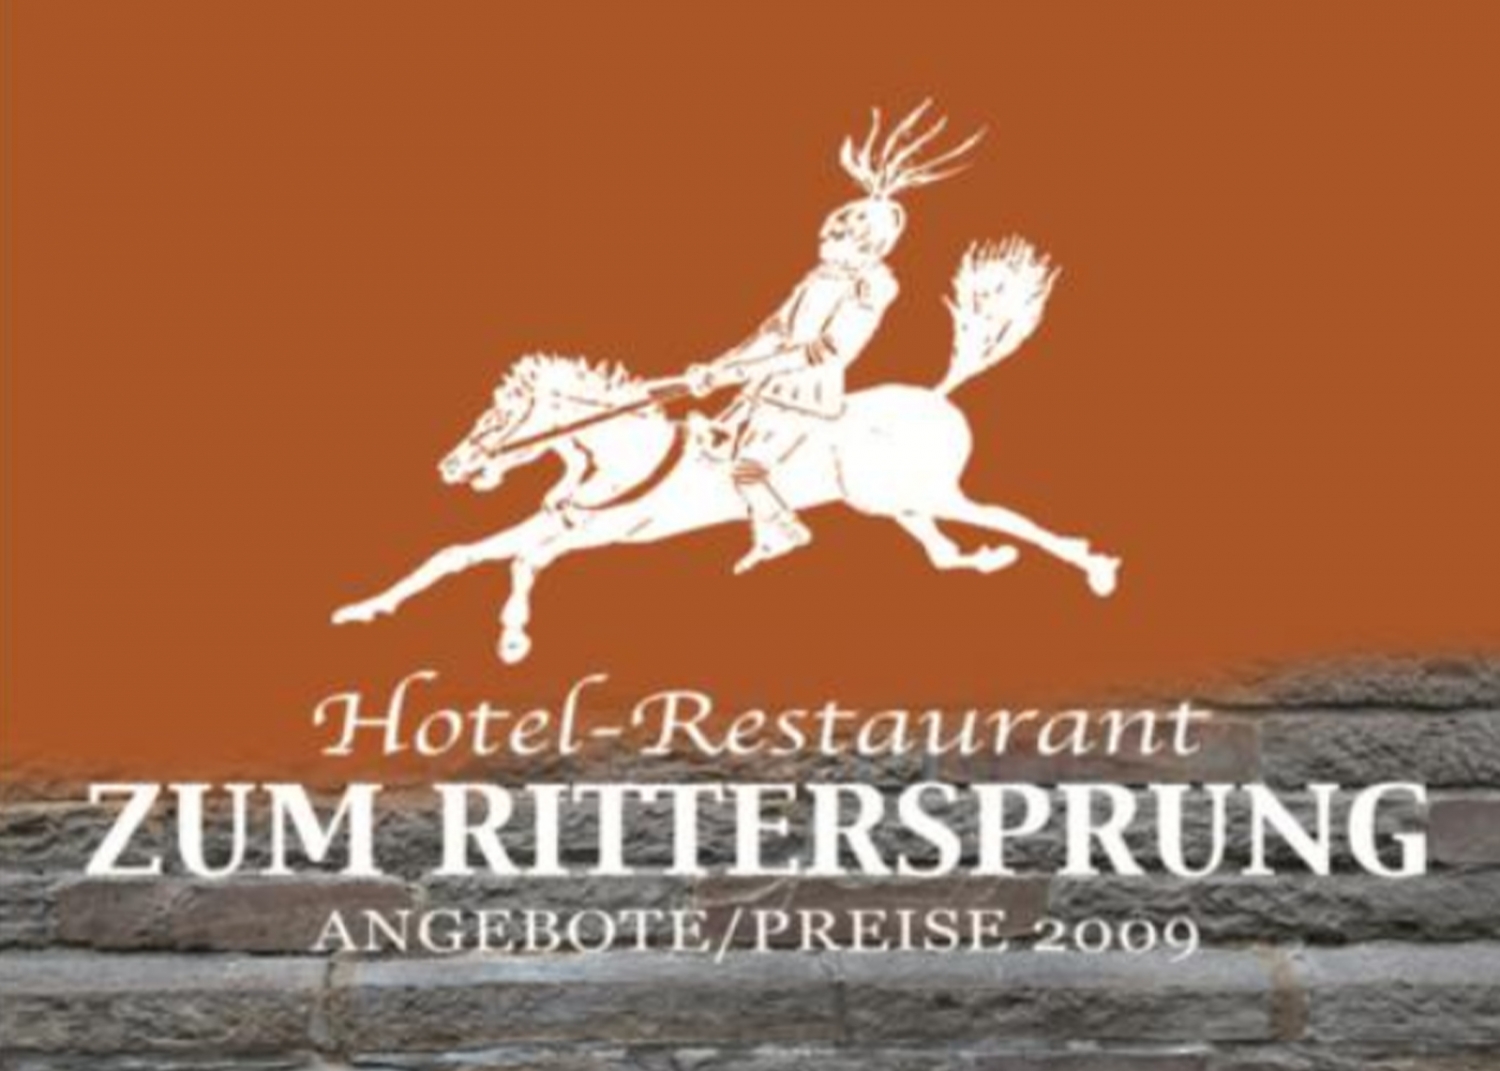 Hotel Restaurant Zum Rittersprung